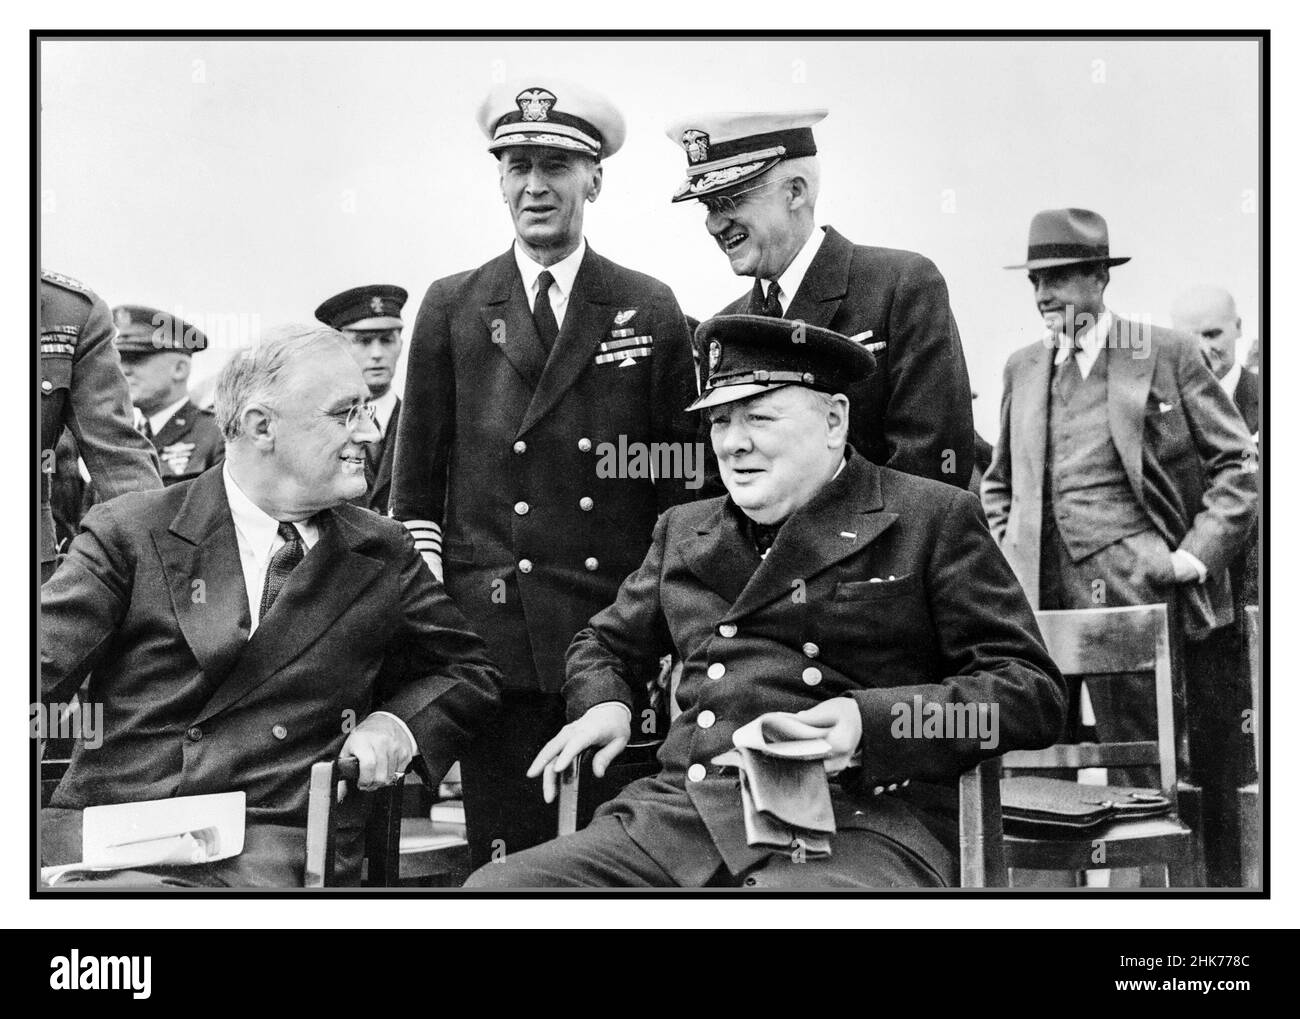 El Presidente Roosevelt y Winston Churchill se sentaron en el cuarto de galón del HMS PRINCE OF WALES para un servicio dominical durante la Conferencia Atlántica, el 10 de agosto de 1941. WW2 El Presidente de la Segunda Guerra Mundial Franklin D Roosevelt y el Primer Ministro Winston Churchill después del Servicio Divino a bordo del HMS PRINCE OF WALES. Inmediatamente detrás de ellos están el Almirante E J King, USN y el Almirante Stark, USN. Esta fotografía fue tomada durante una serie de reuniones entre el Presidente Roosevelt y el Primer Ministro Churchill a bordo del HMS PRINCE OF WALES y el USS AUGUSTA en el Atlántico Norte frente a la costa de Terranova, del 9 al 12 de agosto de 1941. Foto de stock